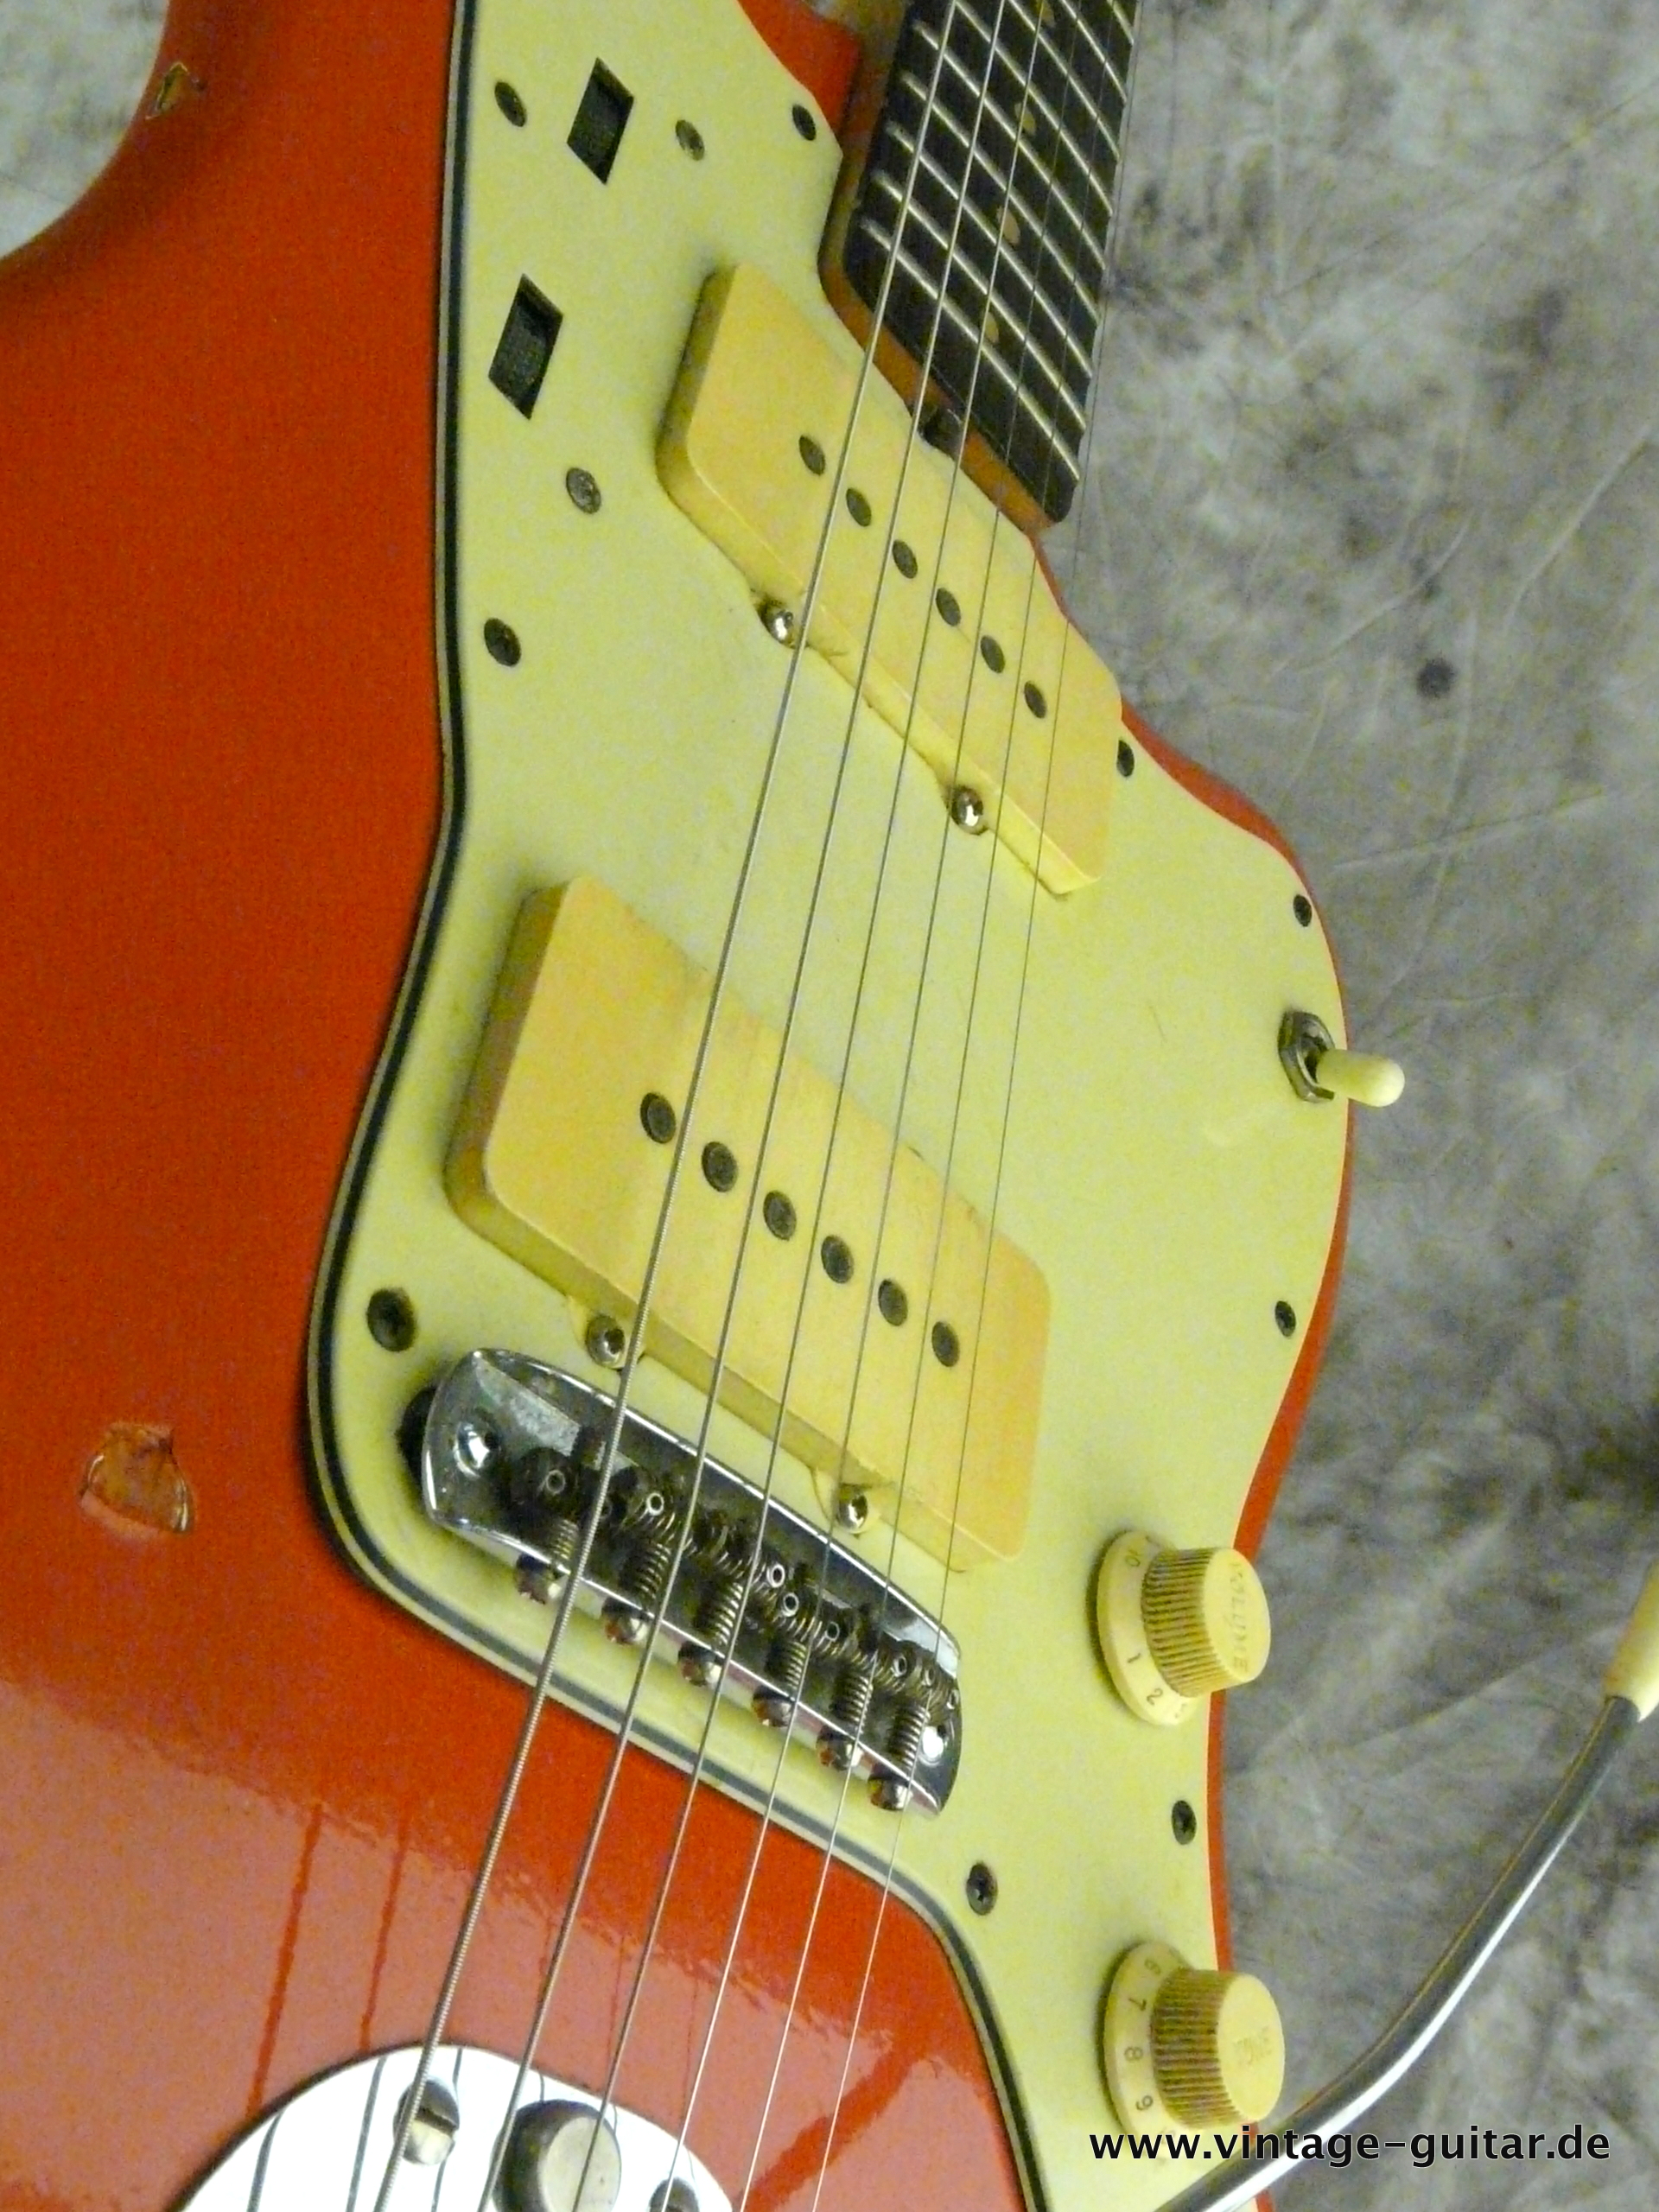 Fender-Jazzmaster-1964-refinished-fiesta-red-010.JPG